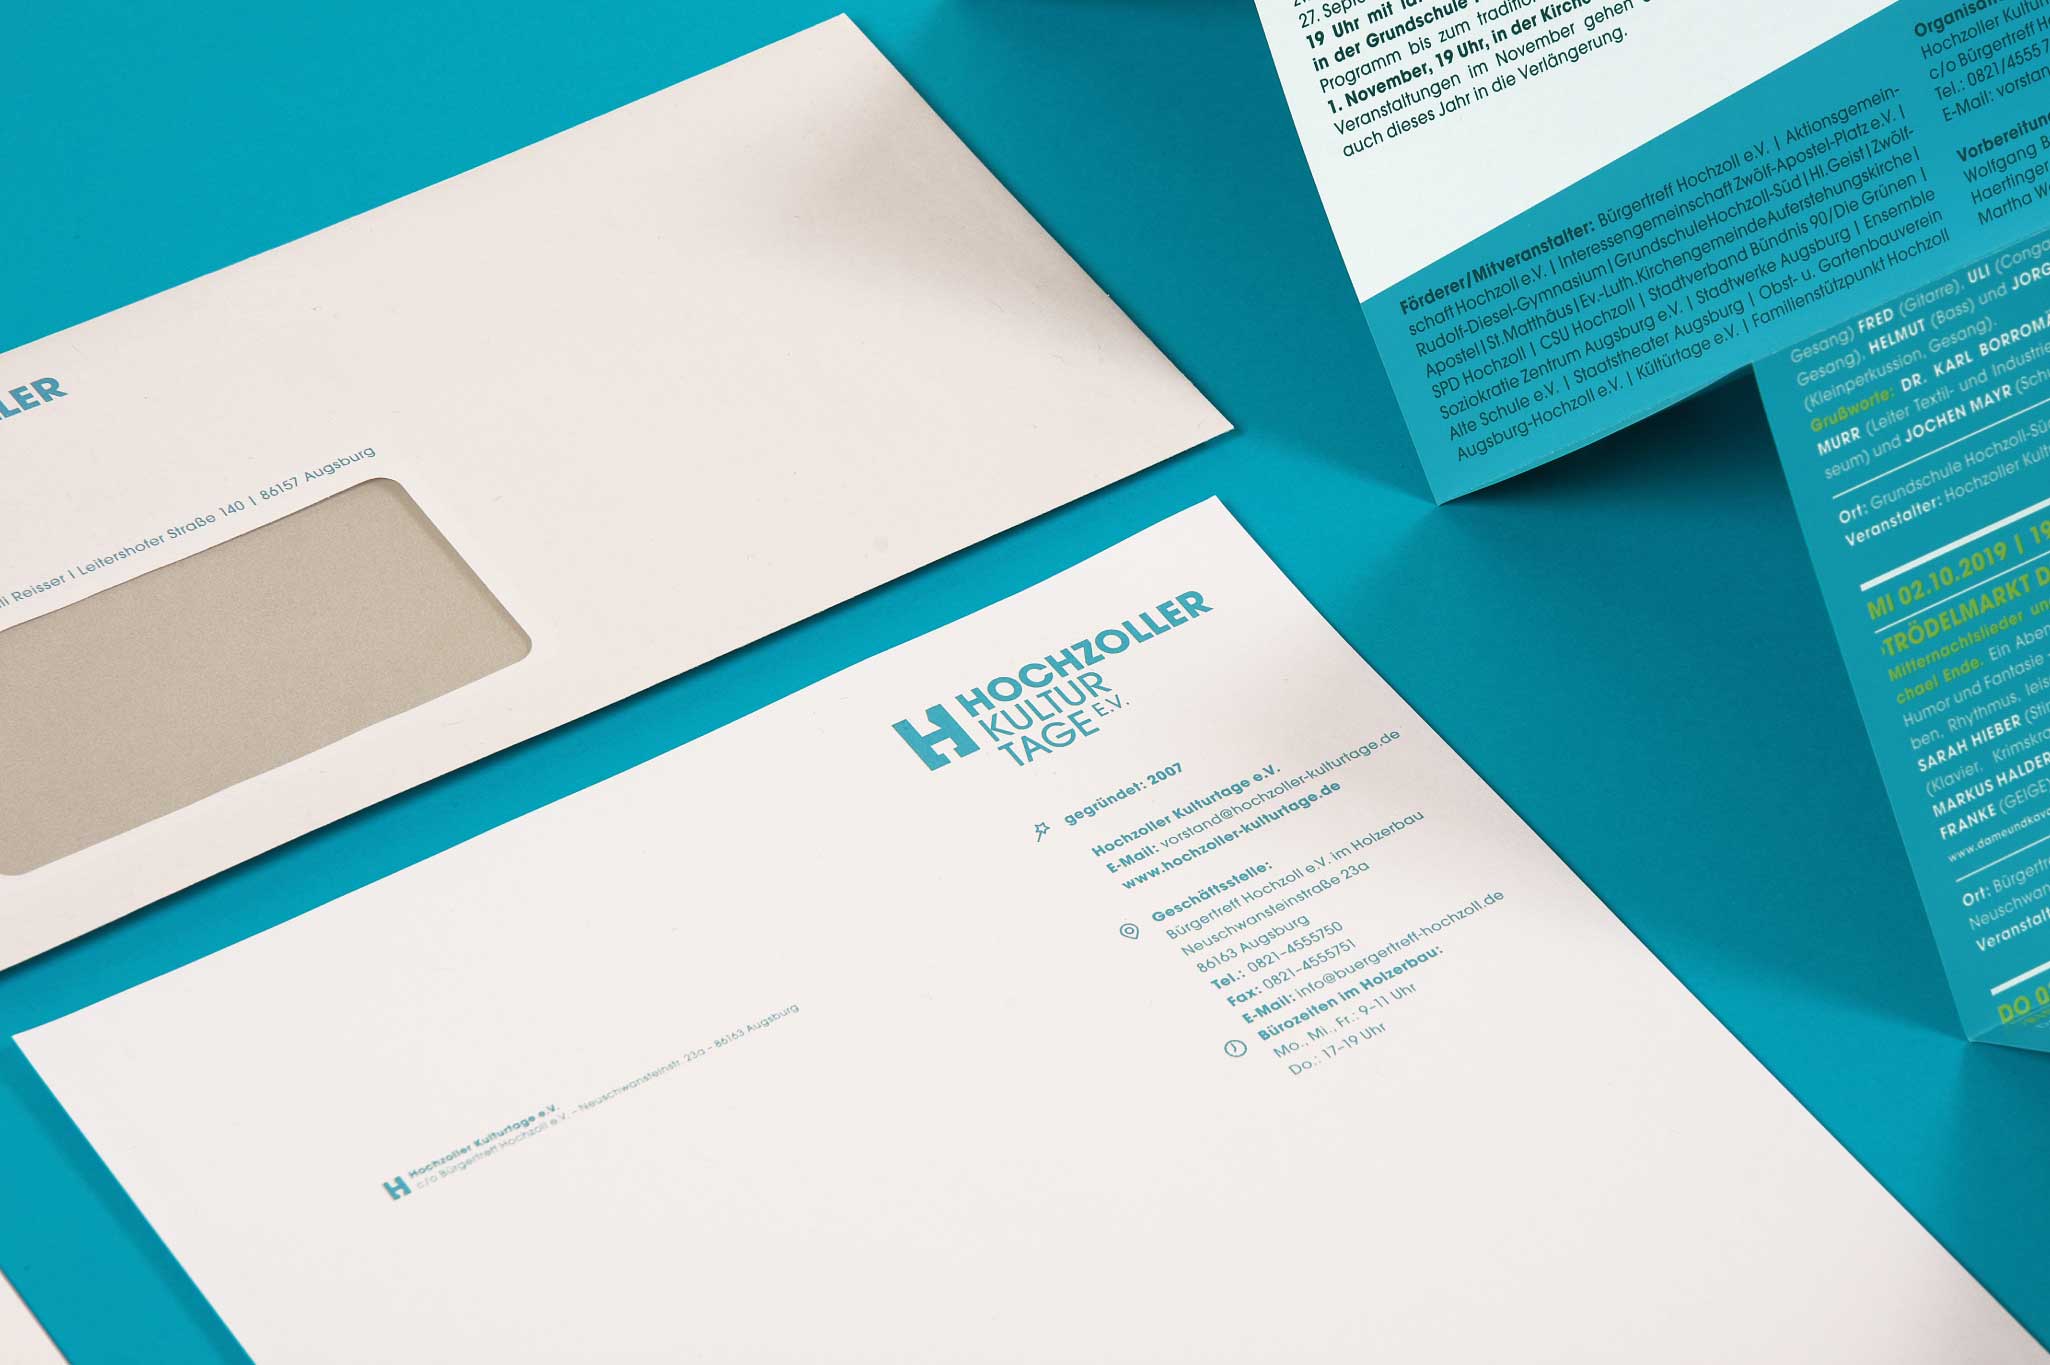 Briefpapier Design für Hochzoller Kulturtage in Augsburg